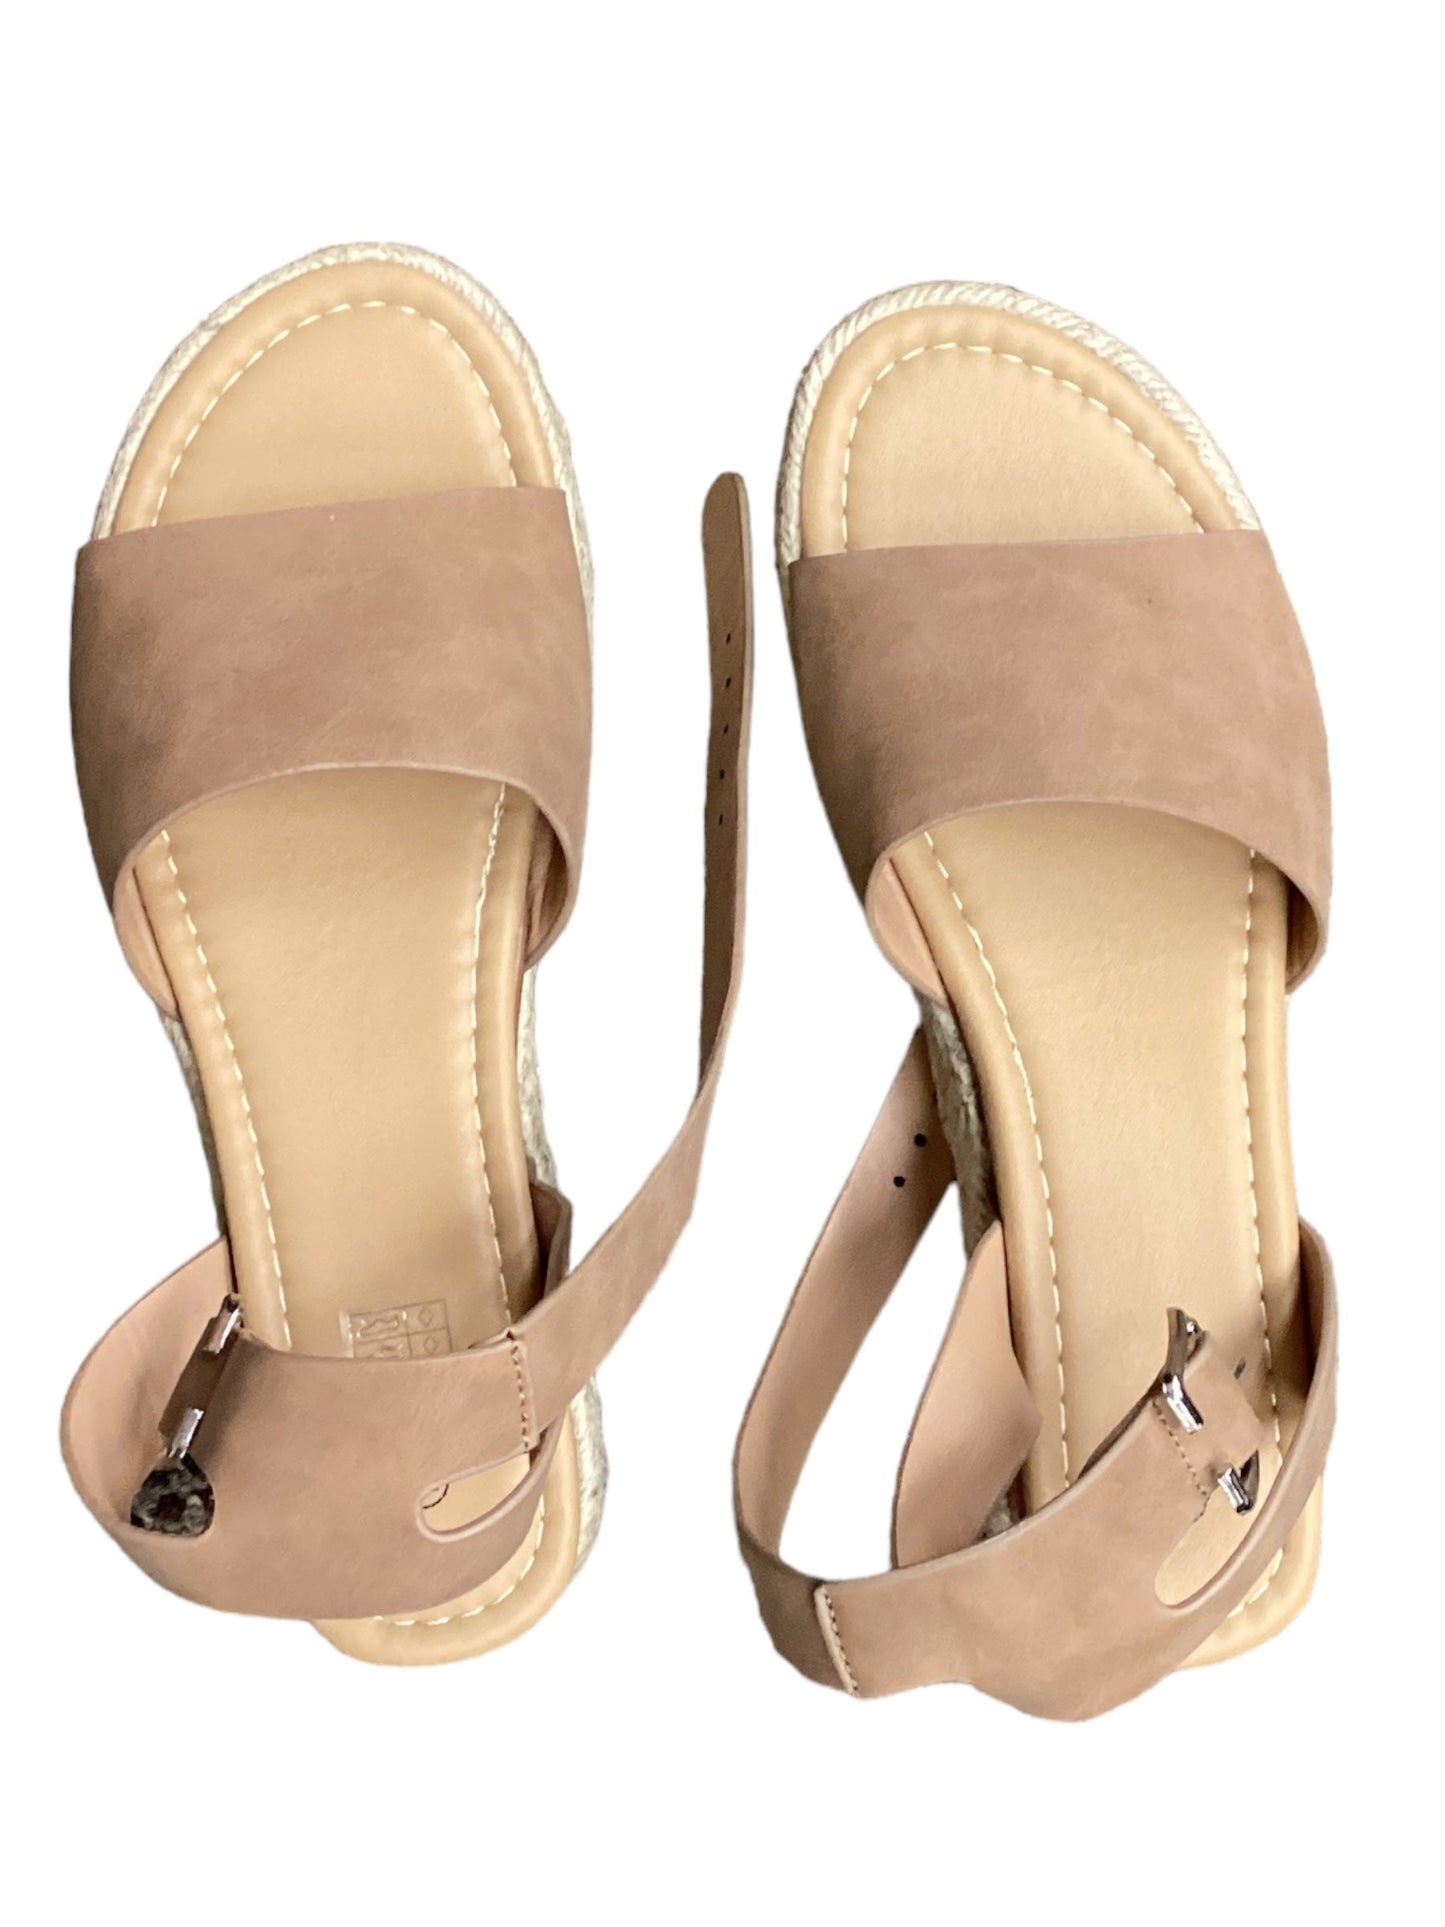 Tan Sandals Flats Clothes Mentor, Size 11